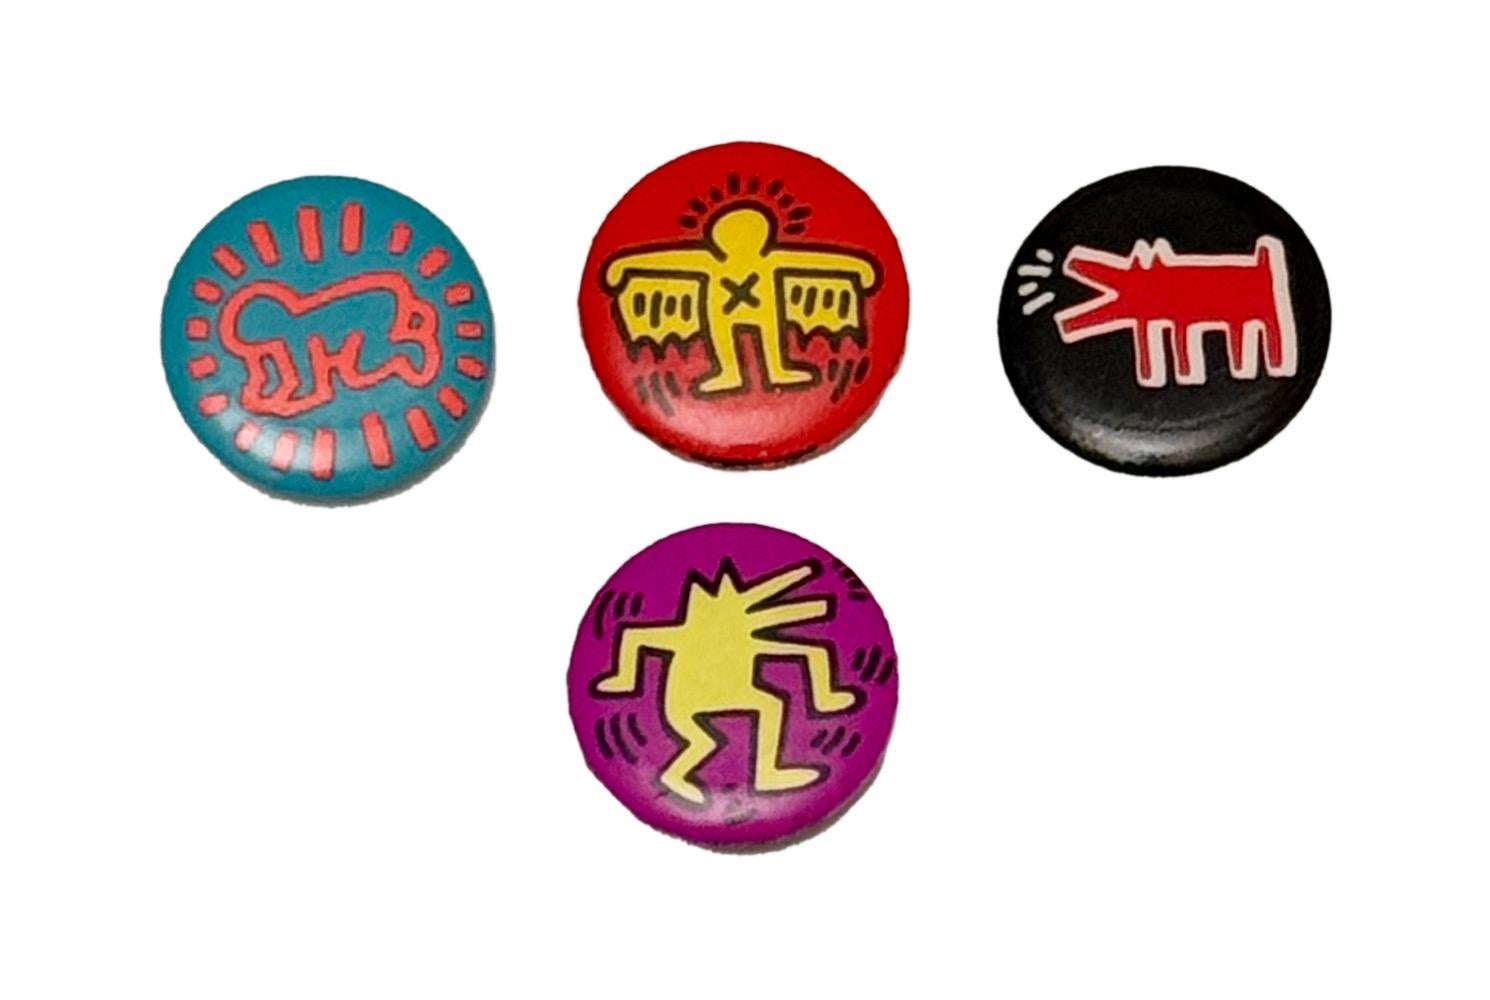 Un ensemble de 4 pin's vintage Keith Haring Pop Shop, circa 1986-1987, représentant certaines des images les plus emblématiques de l'artiste.

Original vers le milieu et la fin des années 1980 (pas de reproductions ultérieures) 
Épingles de la